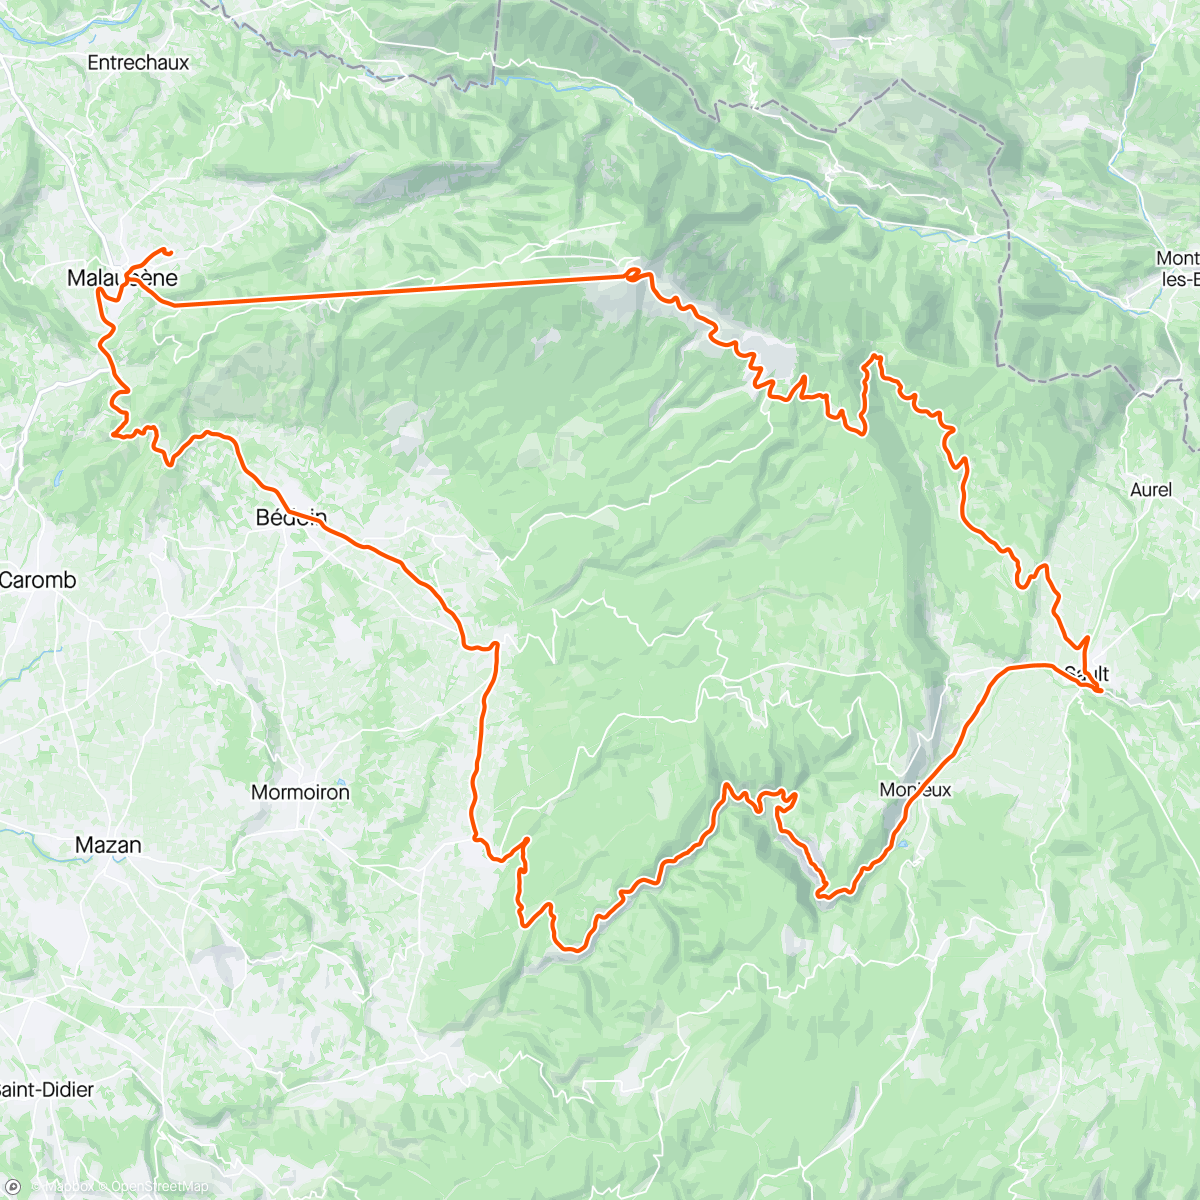 「Mt. Ventoux」活動的地圖